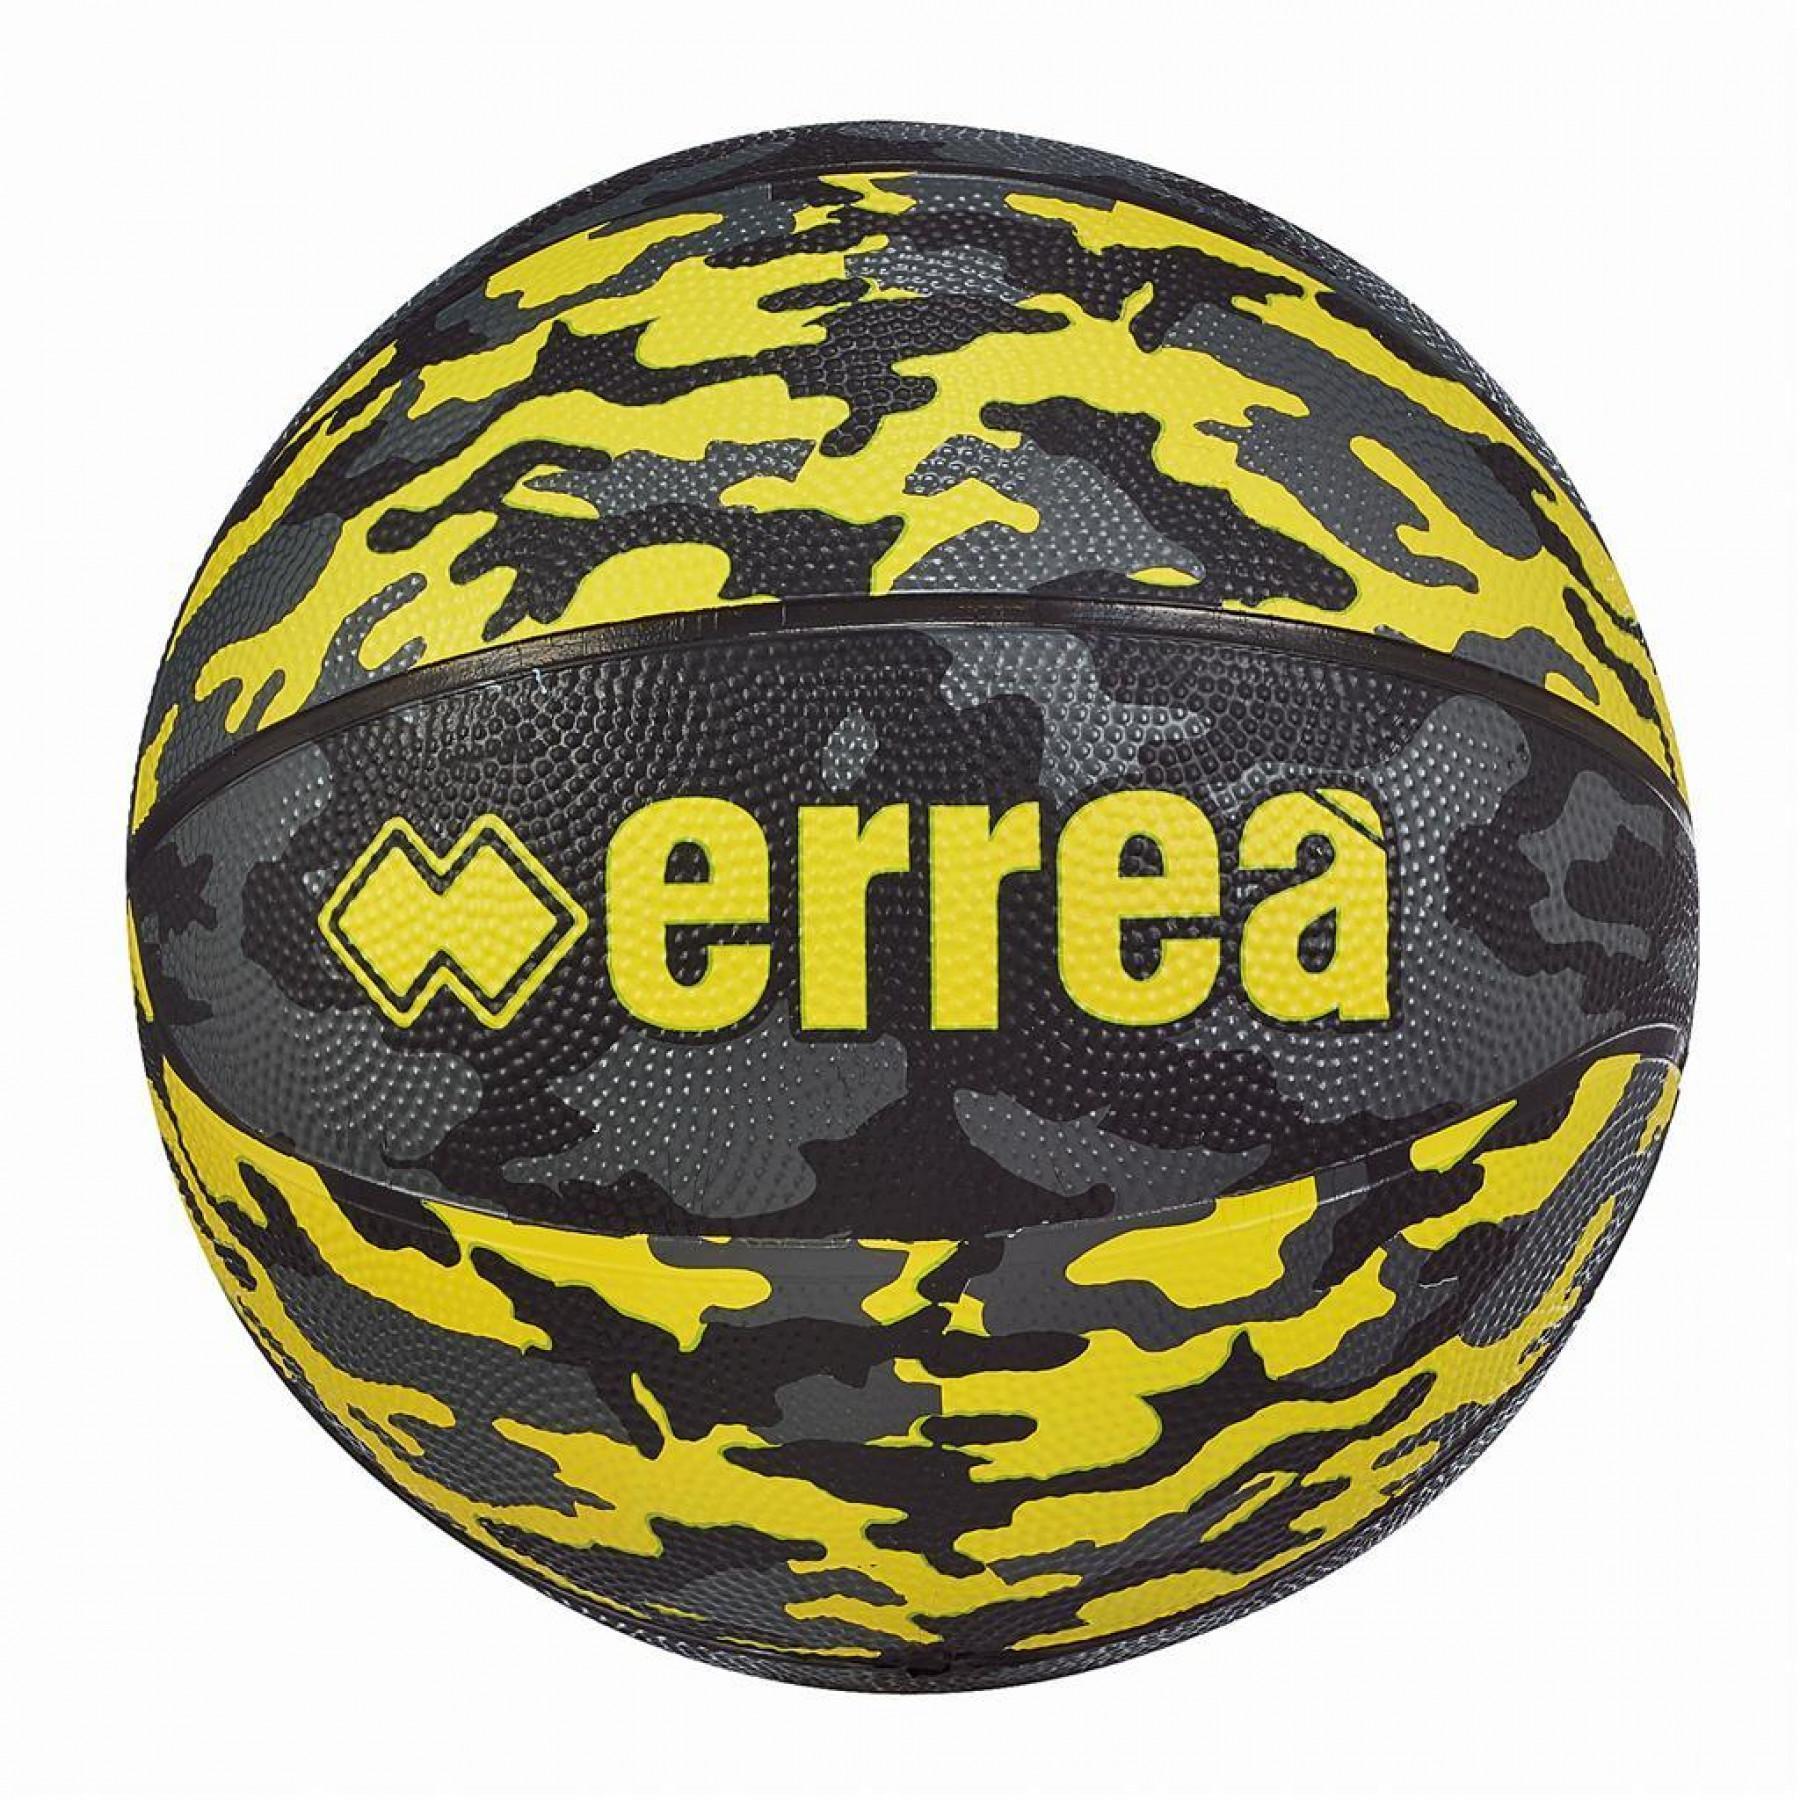 Pallone minibasket Errea BER5